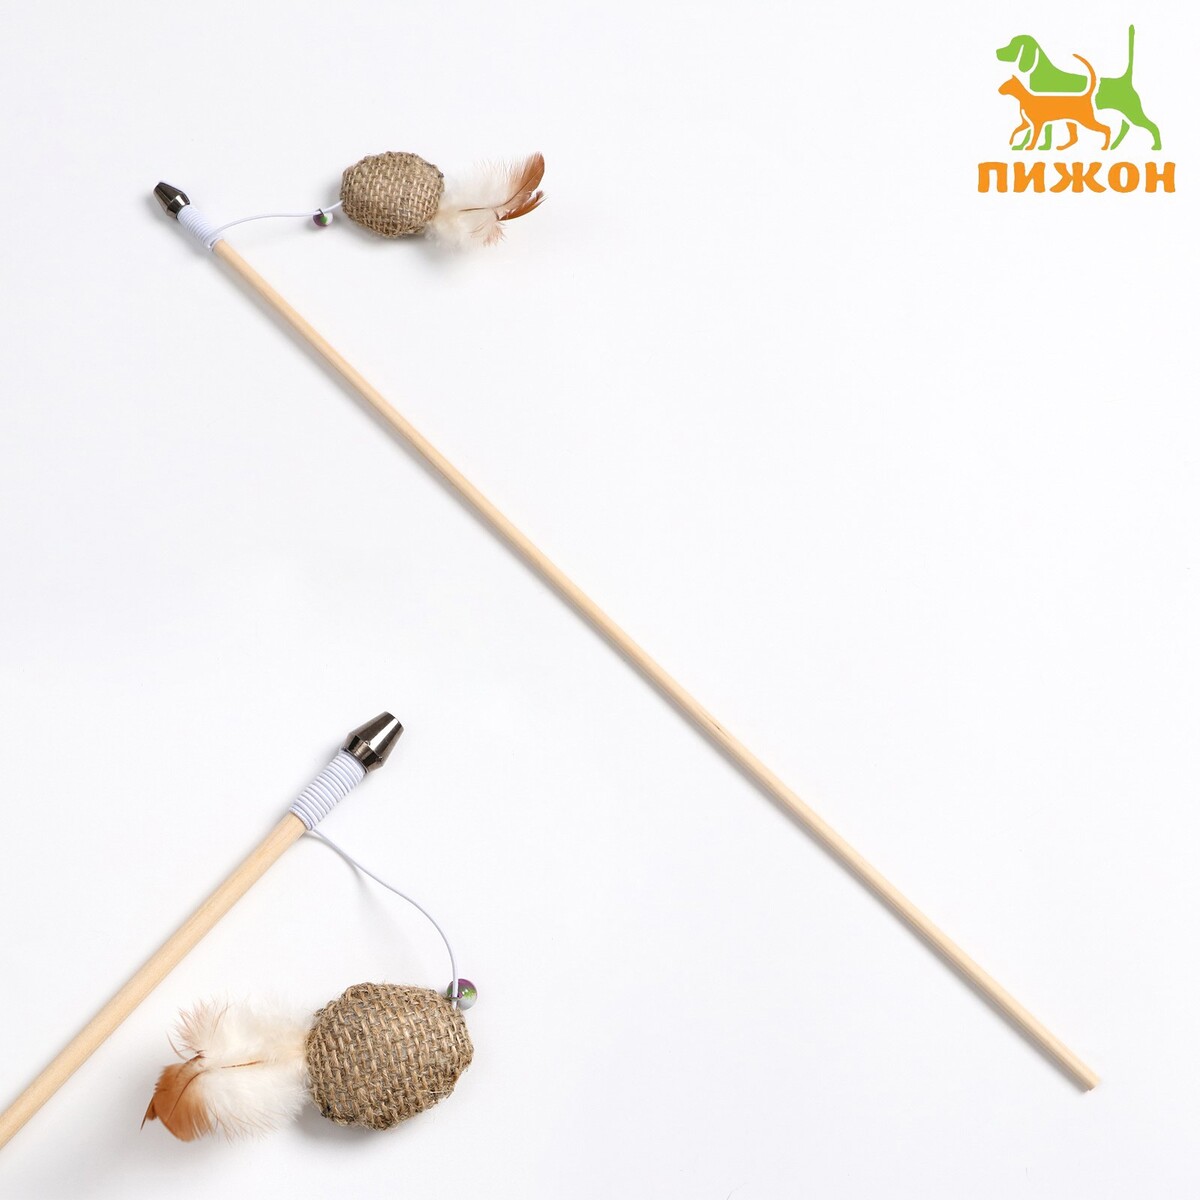 Дразнилка - удочка из эко-материалов дразнилка удочка с плетеным шариком и ными перьями на деревянной ручке голубой